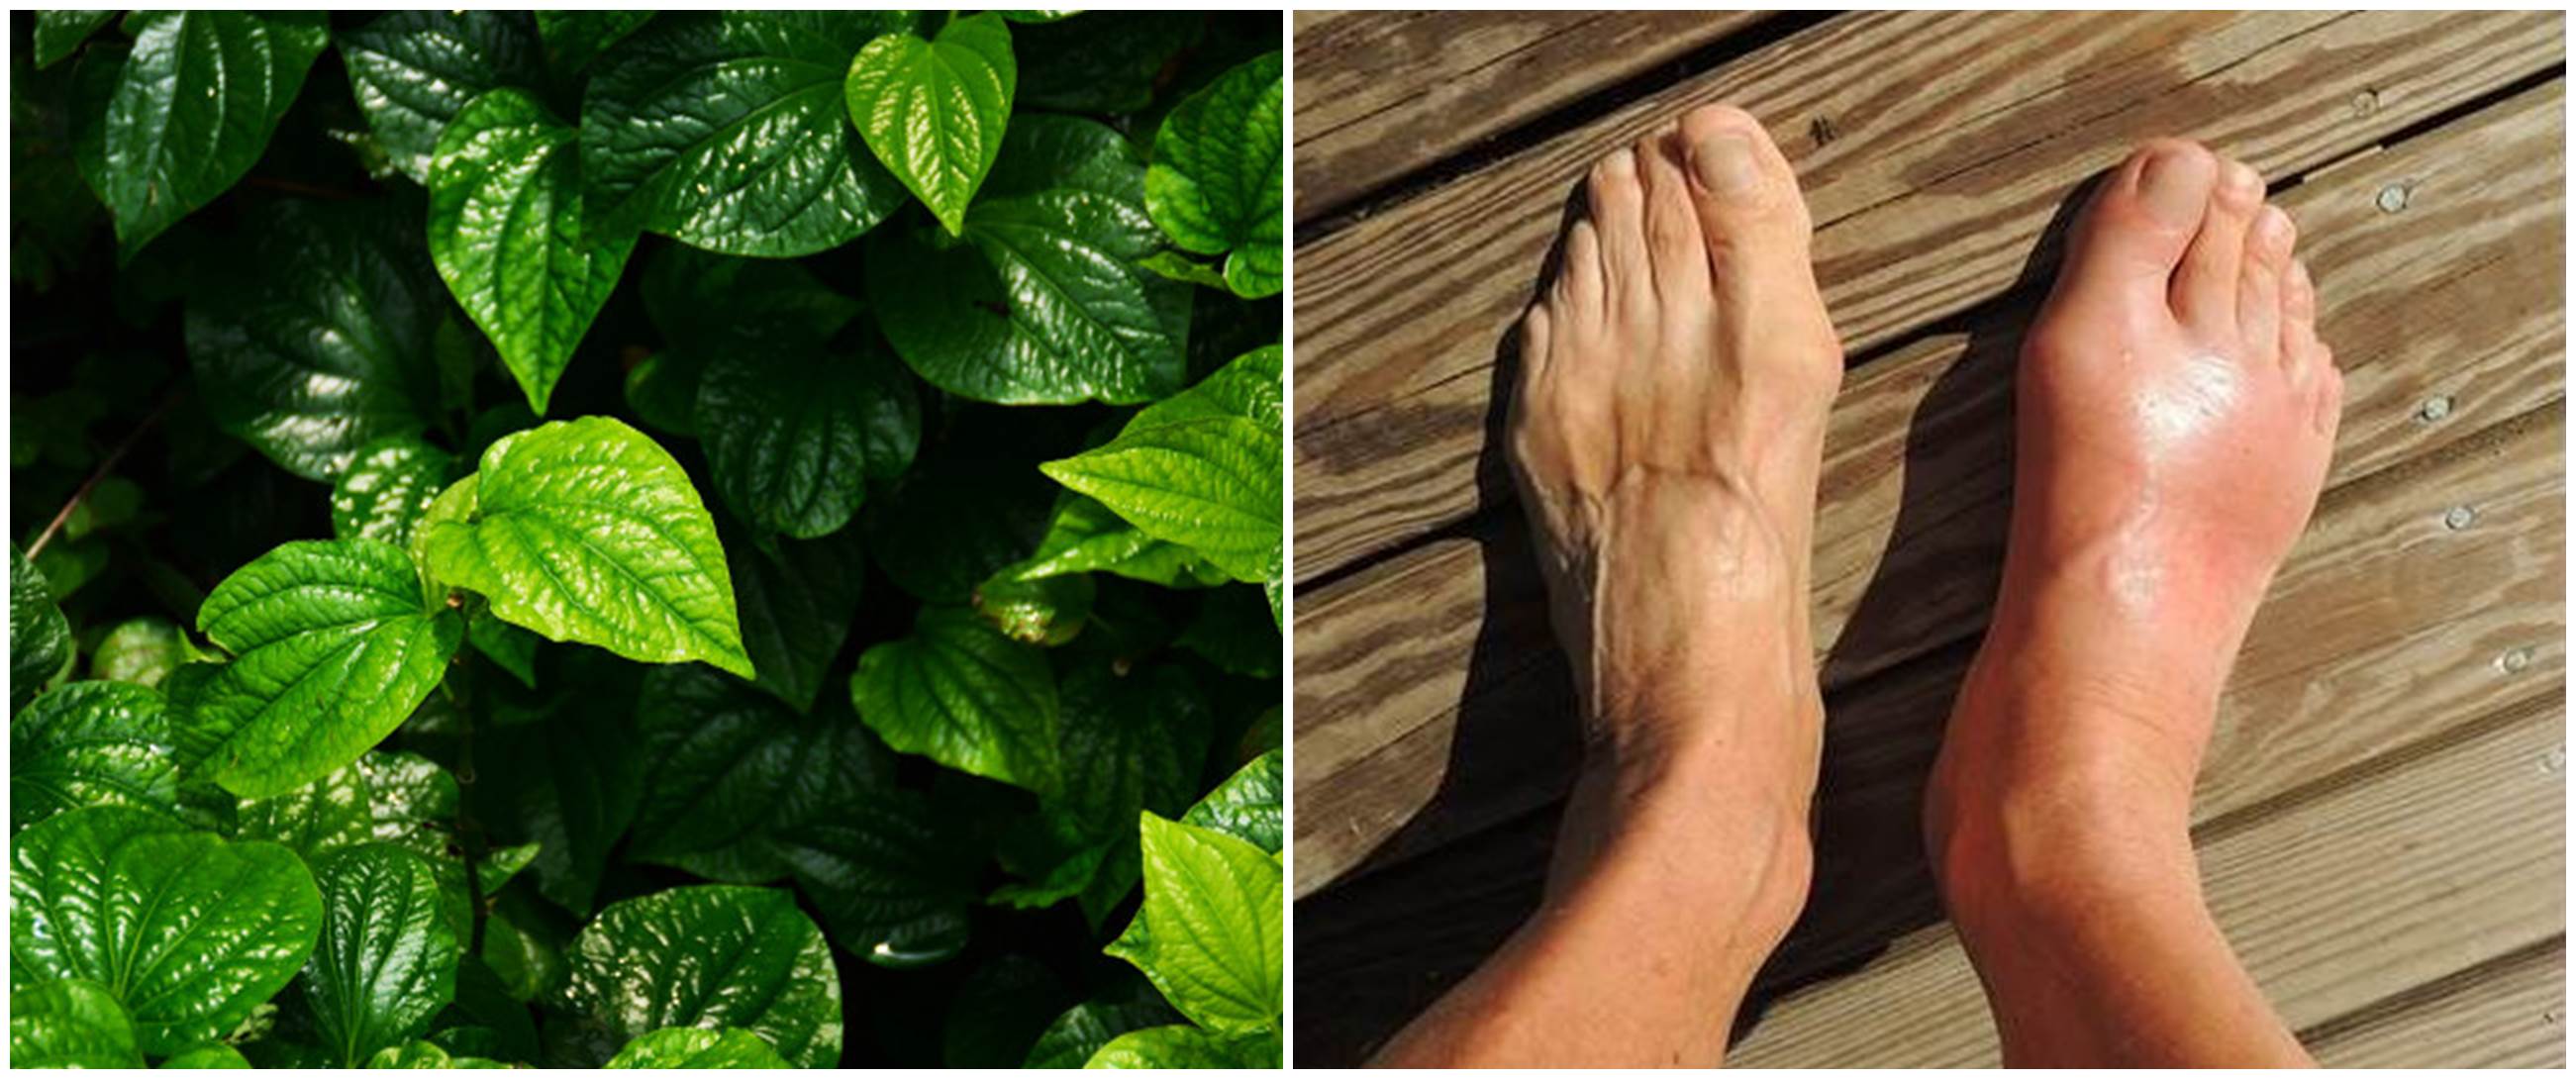 37 Manfaat daun sirih buat kesehatan dan kecantikan, serta penggunaannya